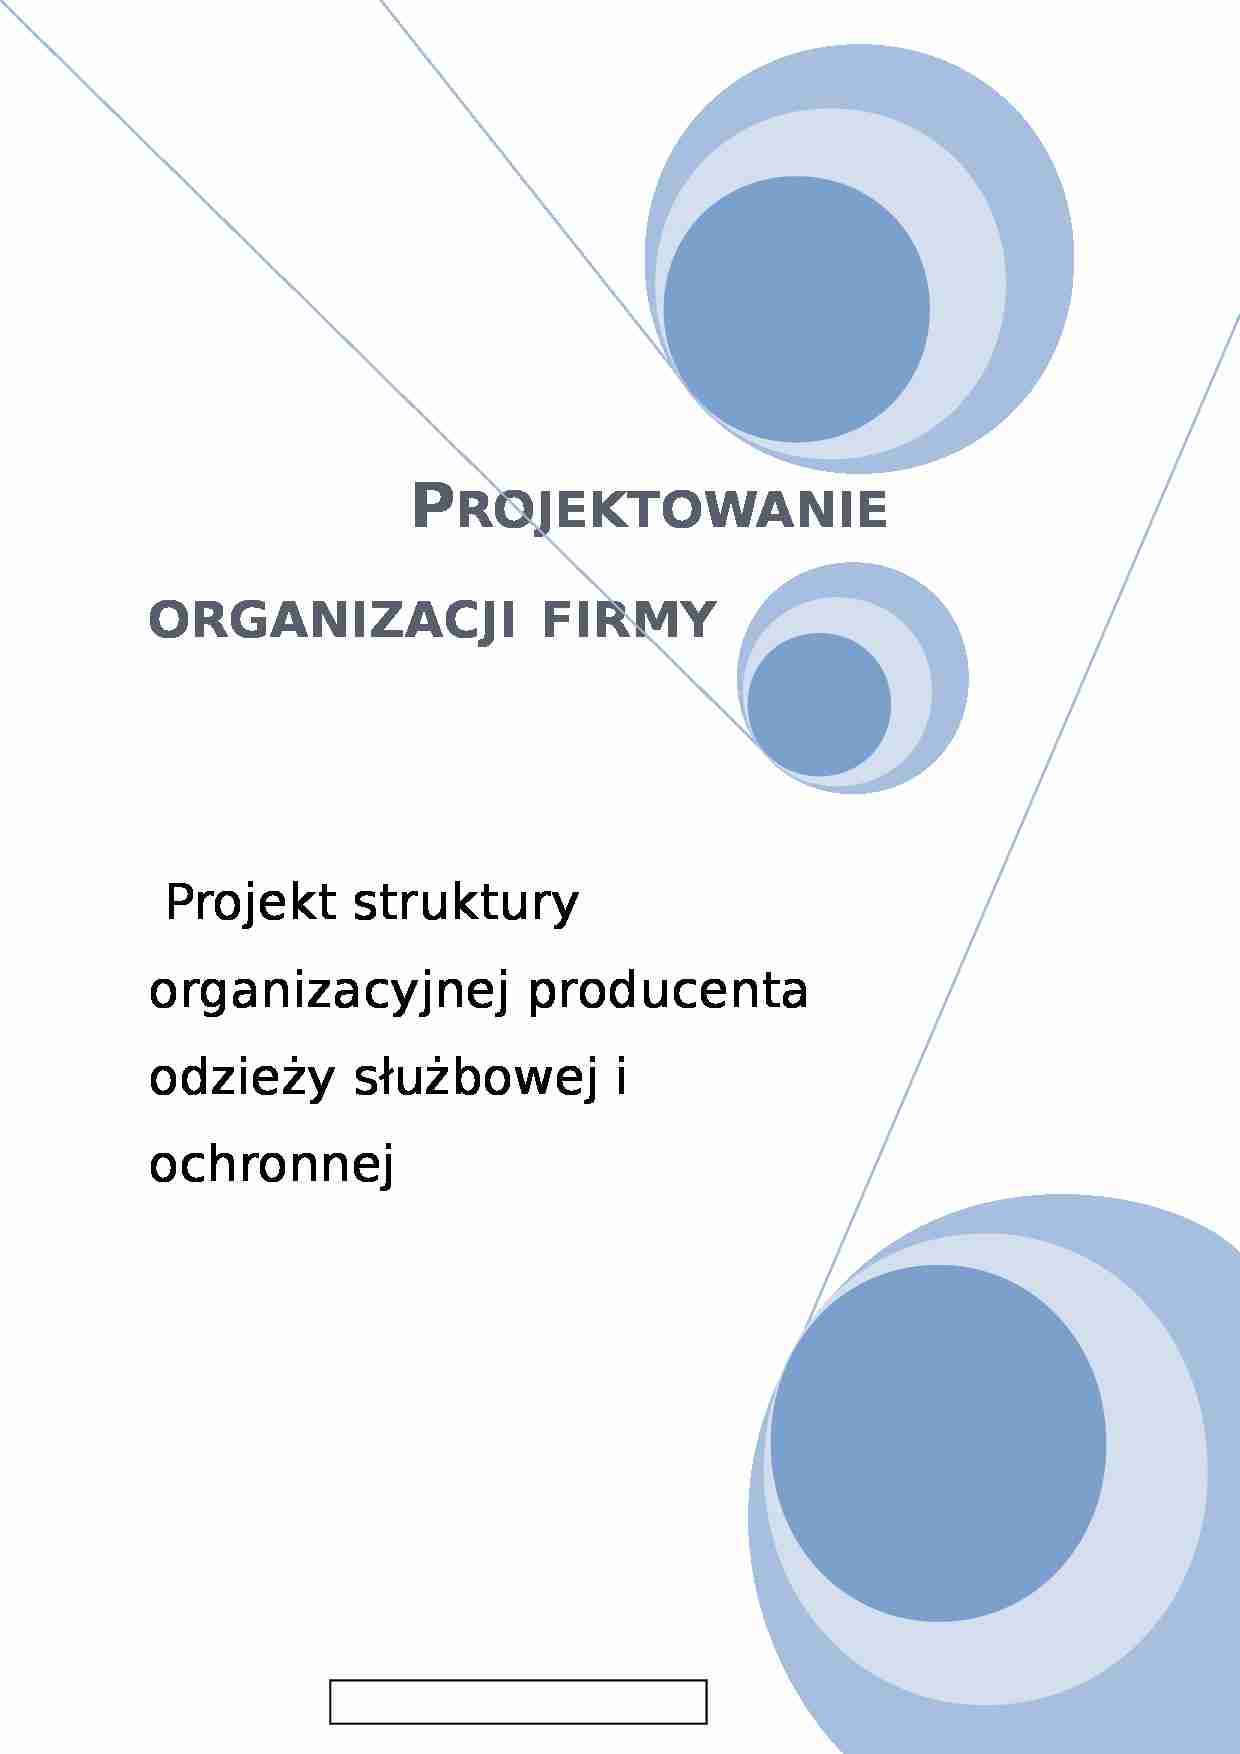 Projektowanie oraganizacji firmy- projekt - strona 1